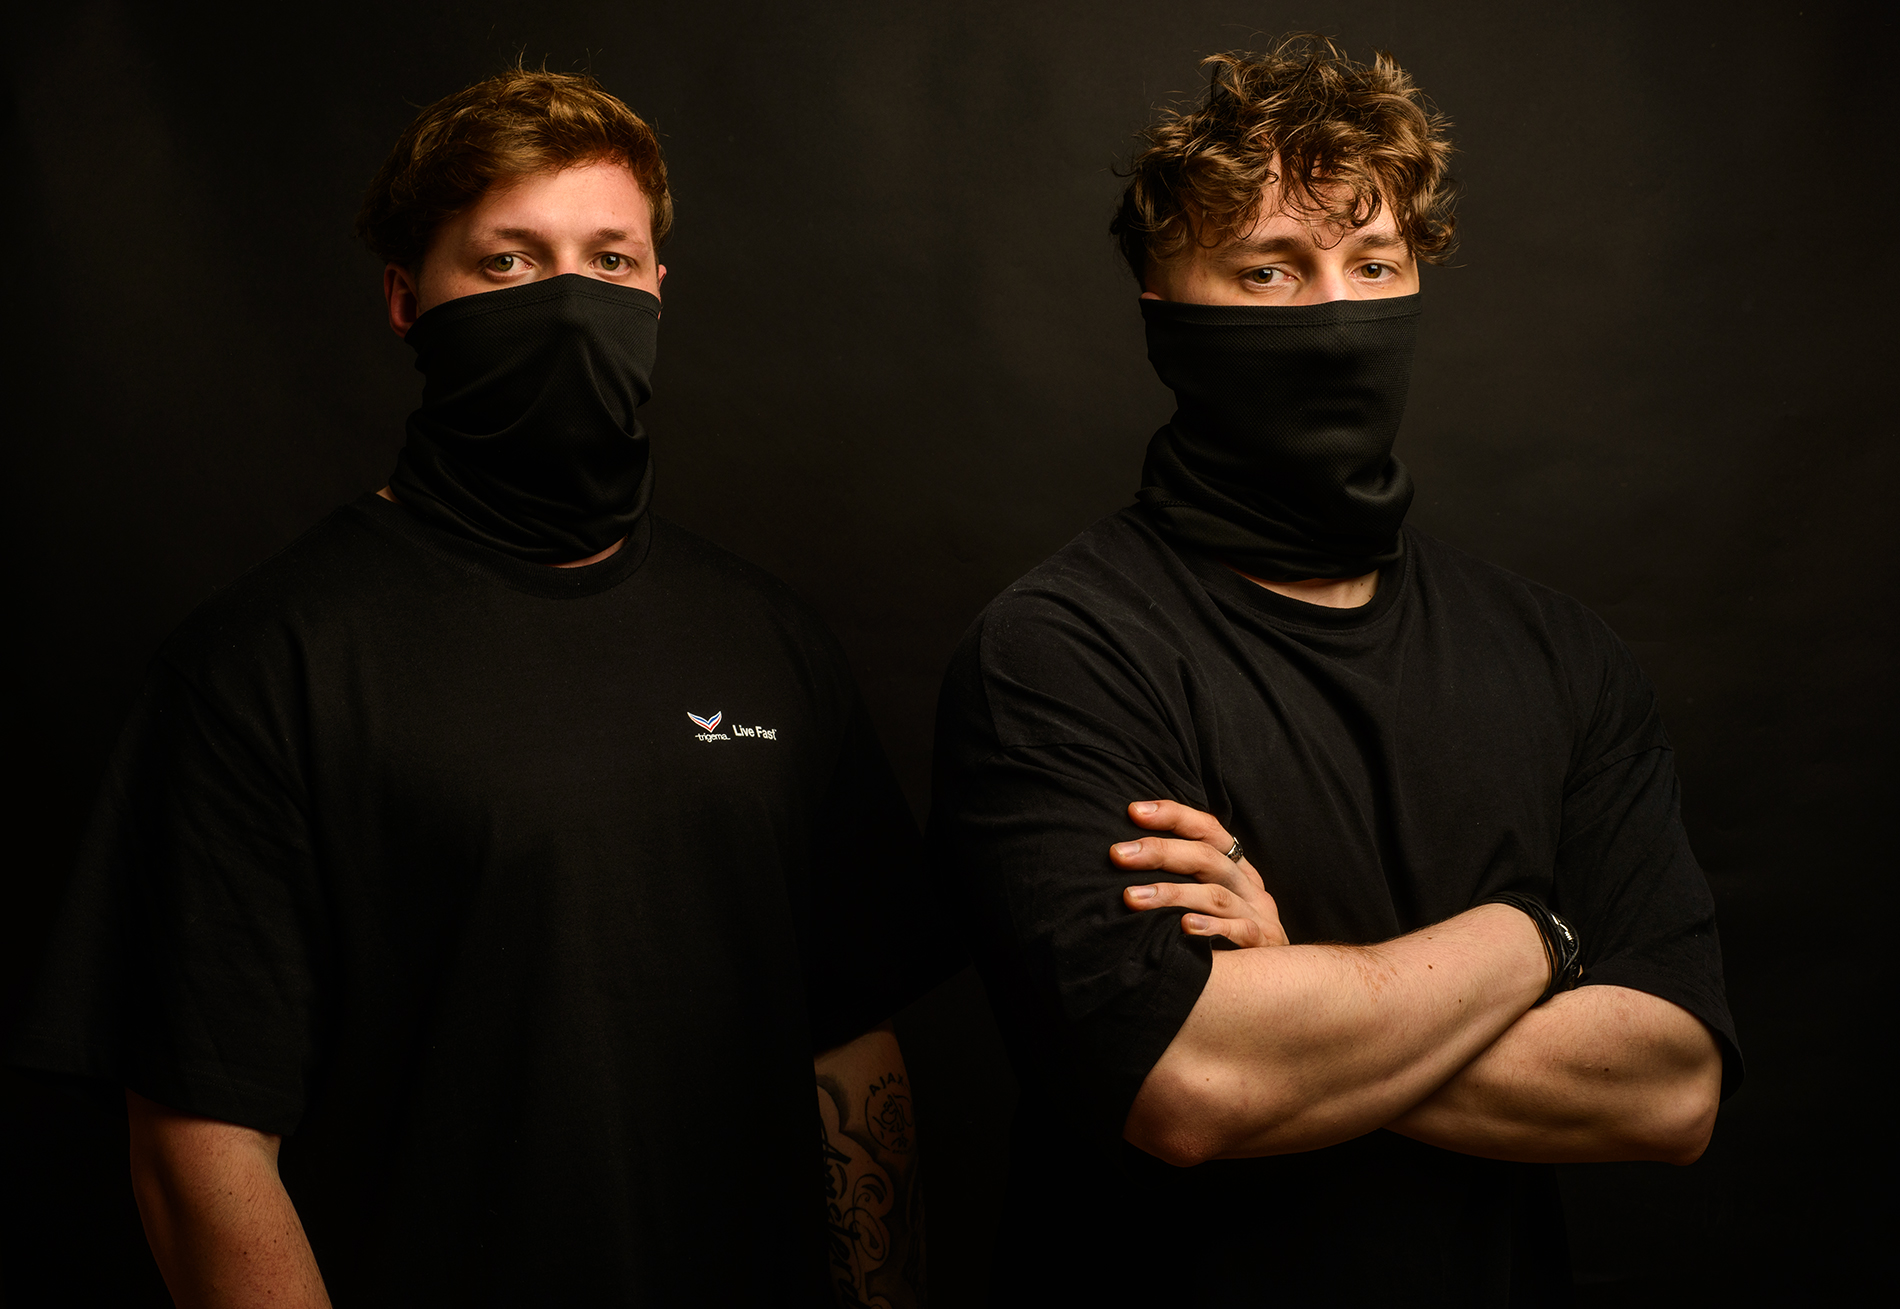 zwei Musiker in schwarzen Masken, Arme verschränkt, im schwarzen Hintergrund